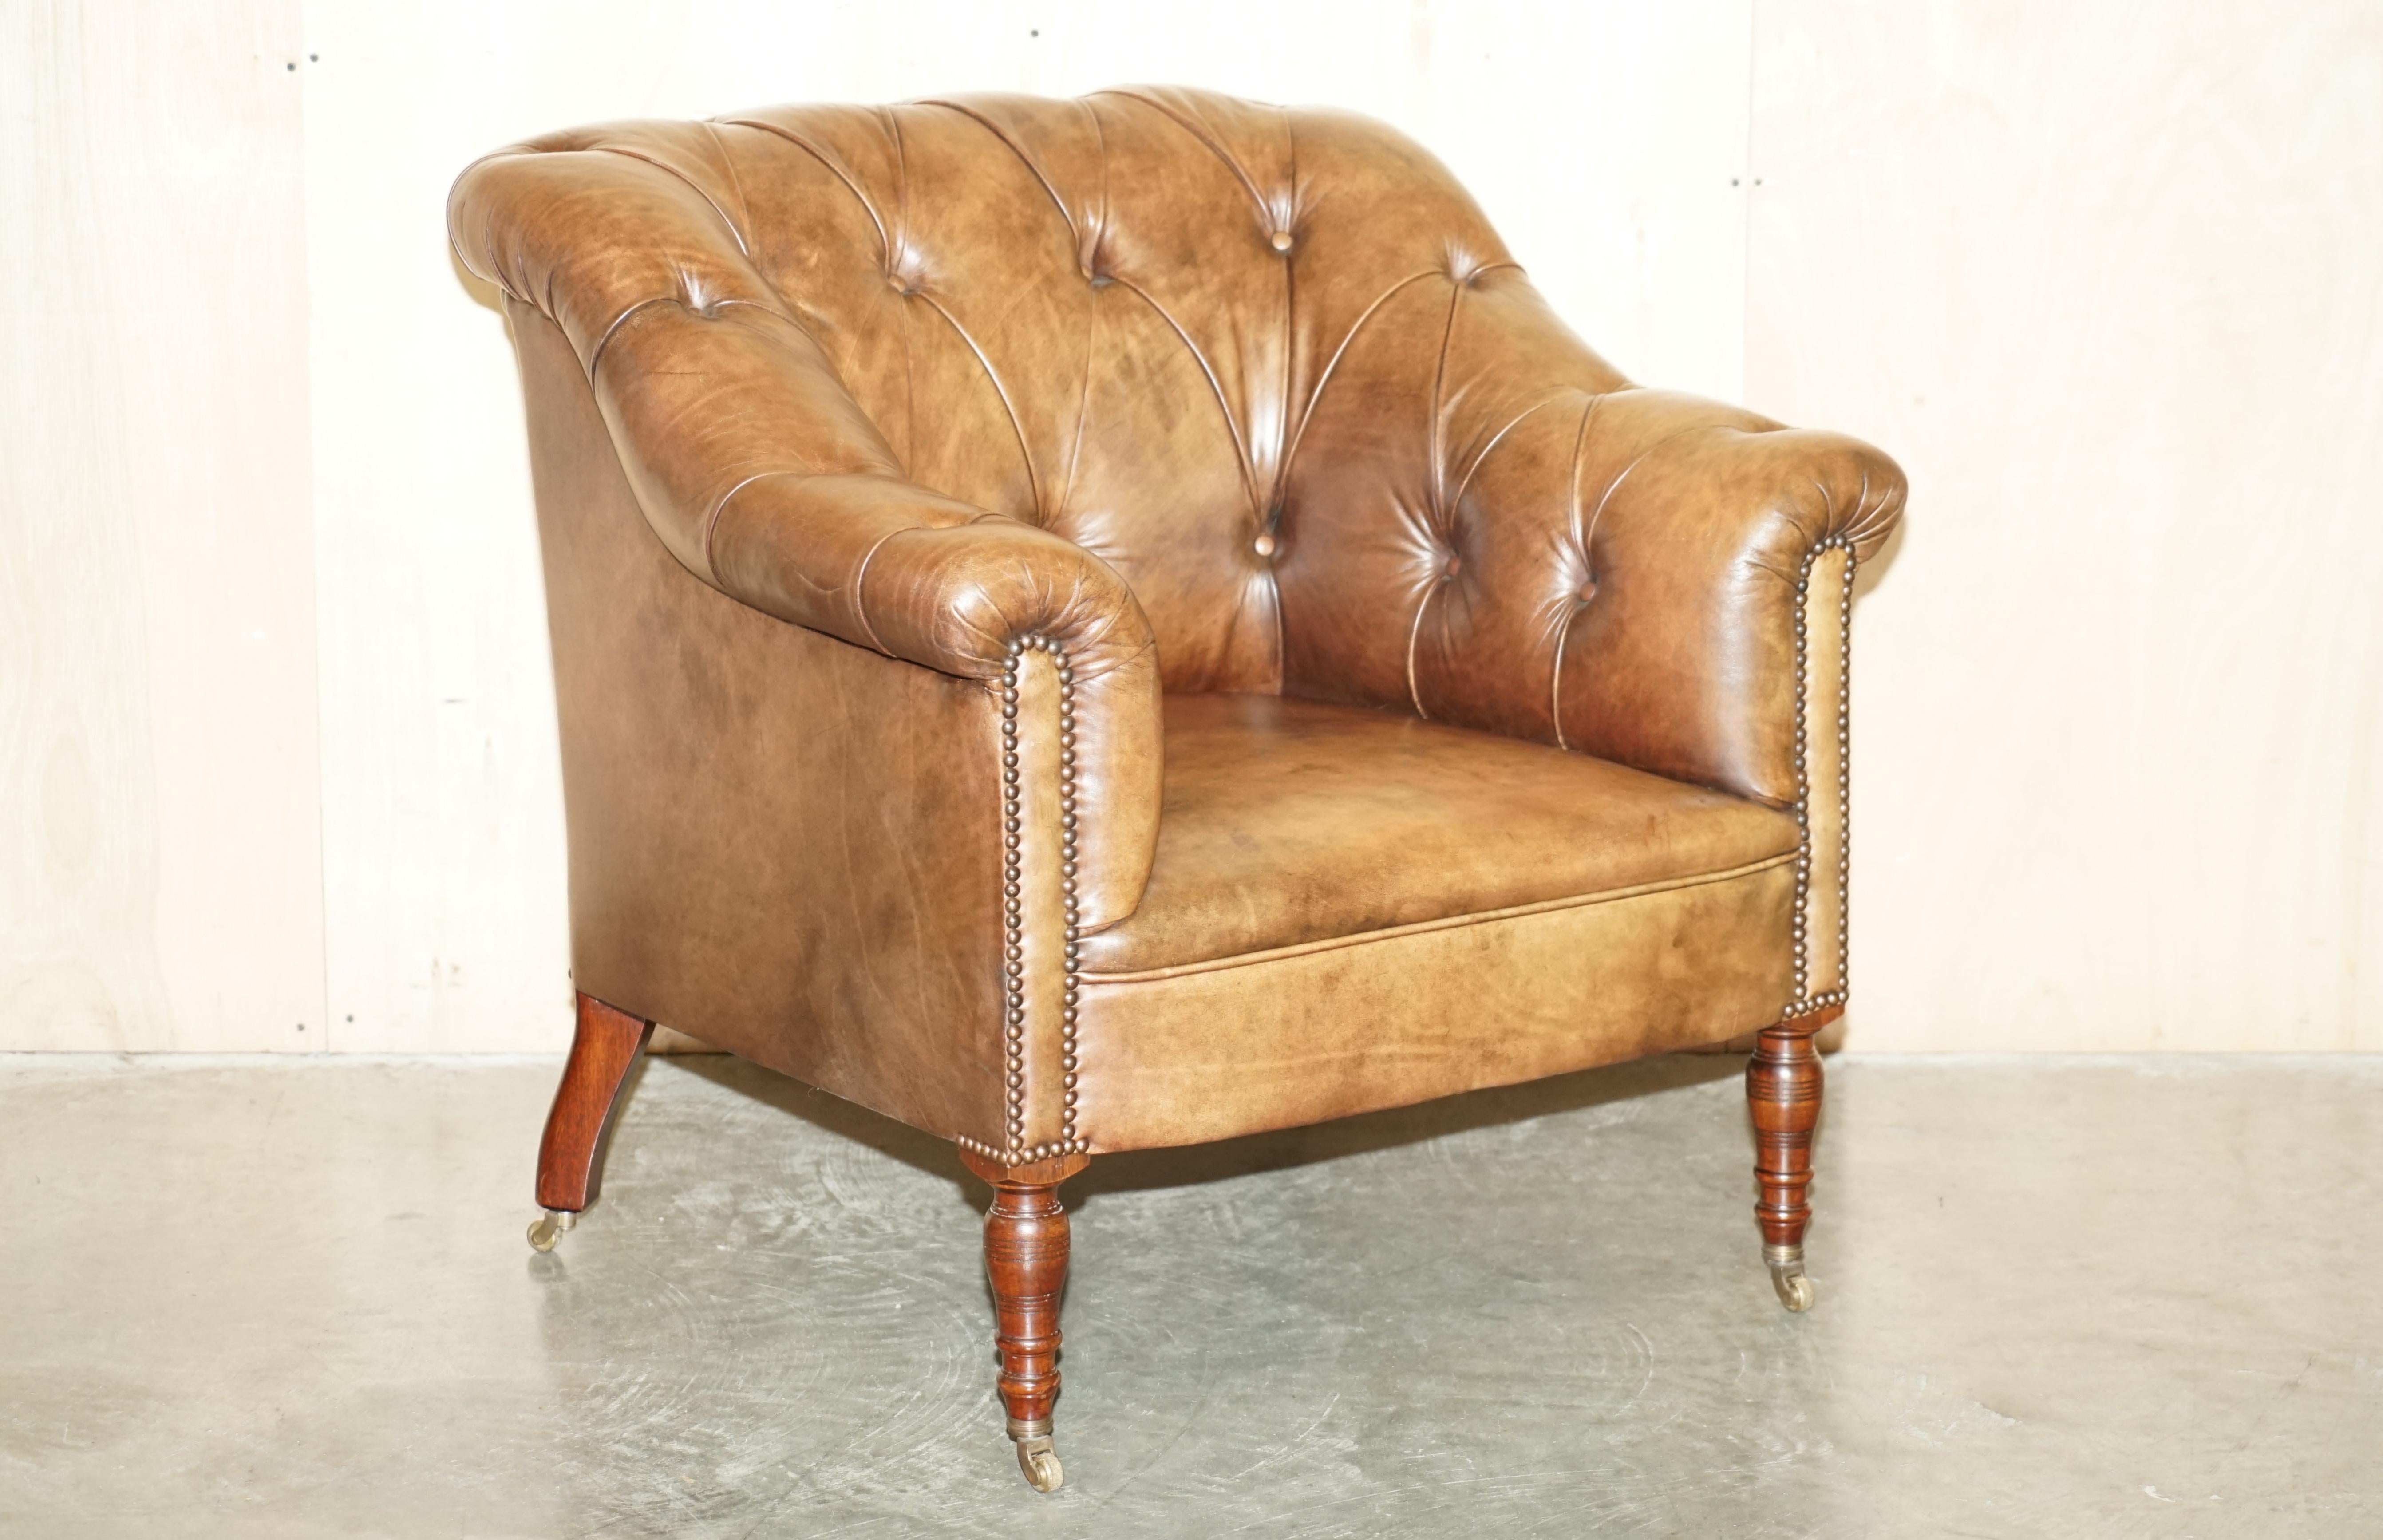 Royal House Antiques

The House Antiques a le plaisir d'offrir à la vente ce superbe fauteuil d'appoint Somerville de George Smith, de couleur brun cigare, avec dossier touffeté Chesterfield. Prix de vente conseillé : 7 950 £.

Veuillez noter que